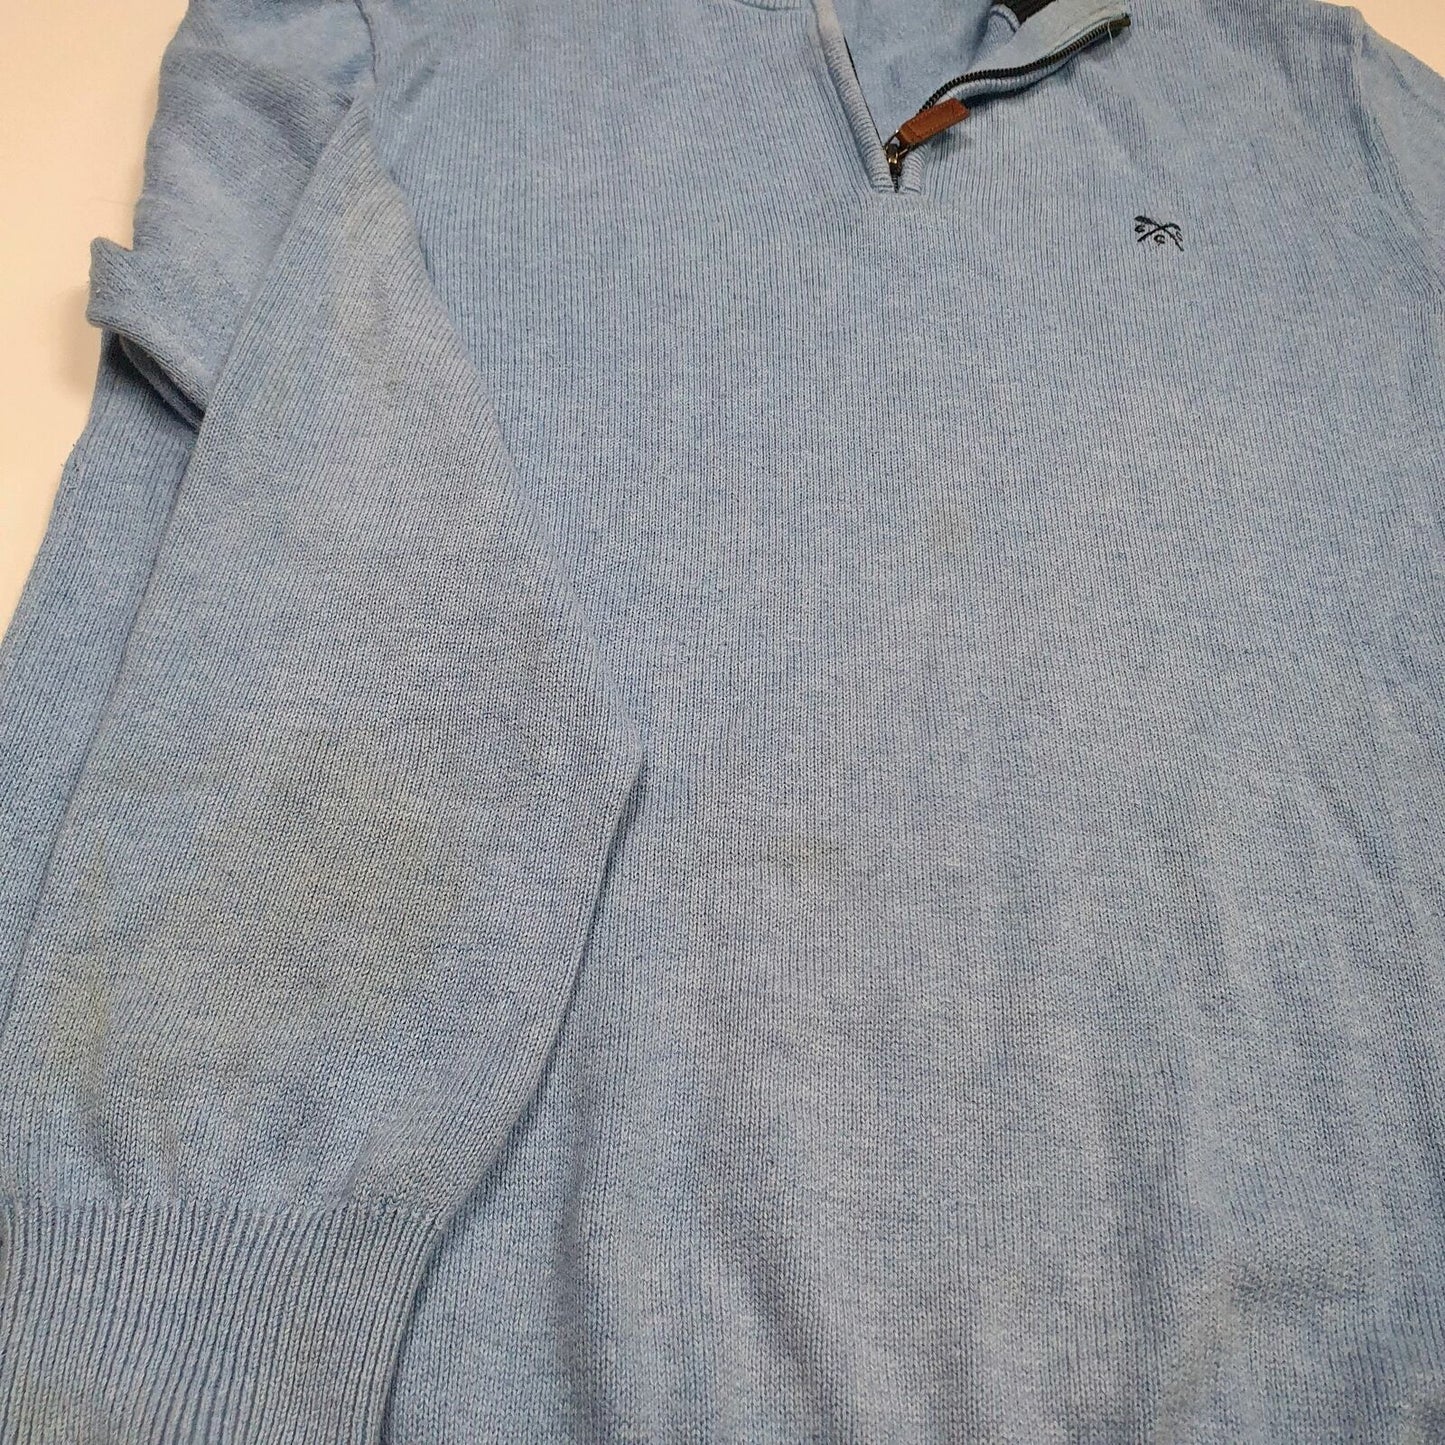 Mens CREW CLOTHING Cotton 1/4 Quarter Zip Jumper Sweatshirt L